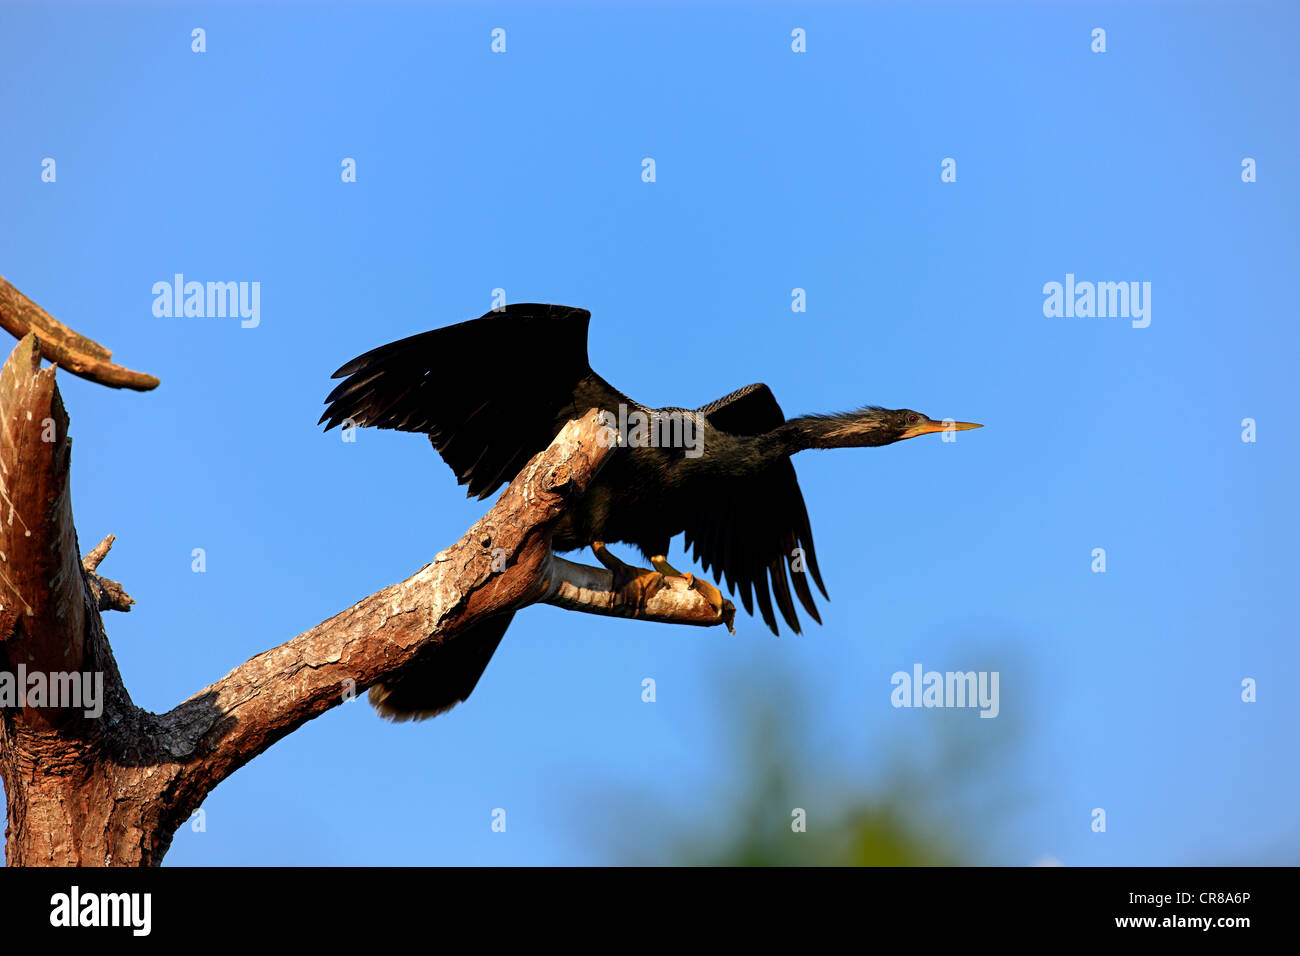 Snakebird or Darter (Anhinga anhinga), adult perched, Orlando, Florida, USA, America Stock Photo